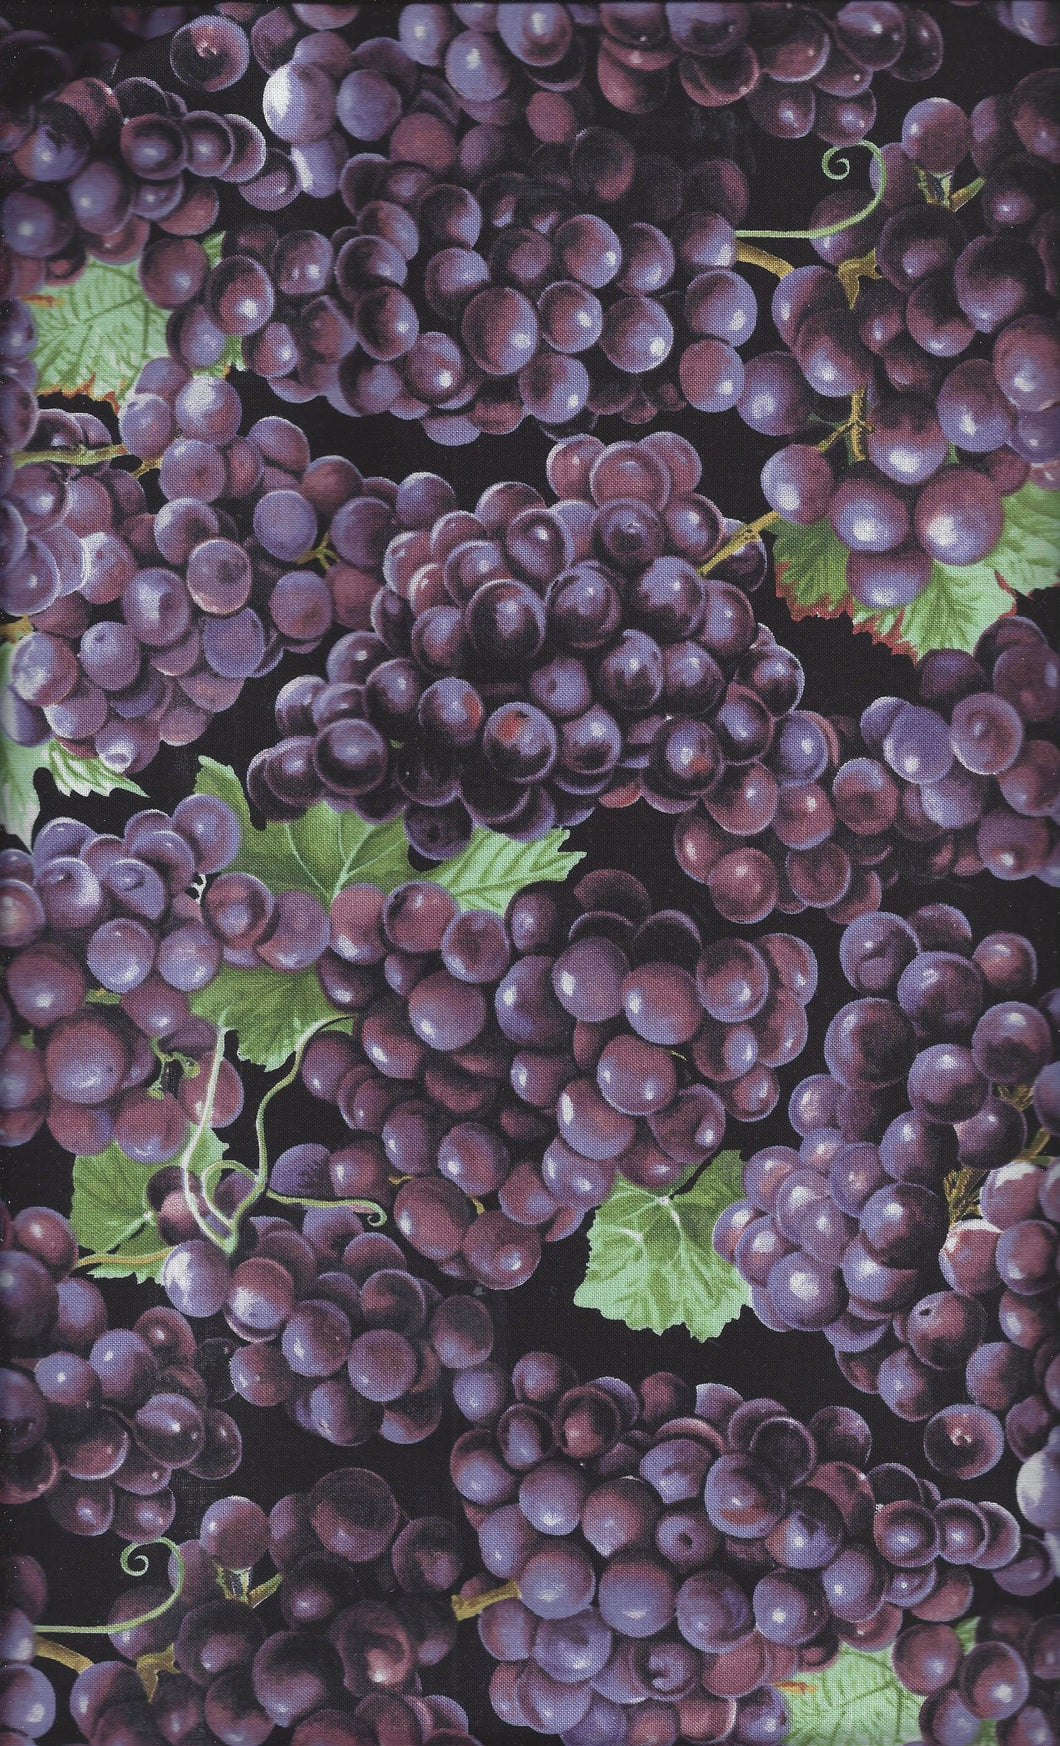 Farmer John's Organic Purple Grapes ed532